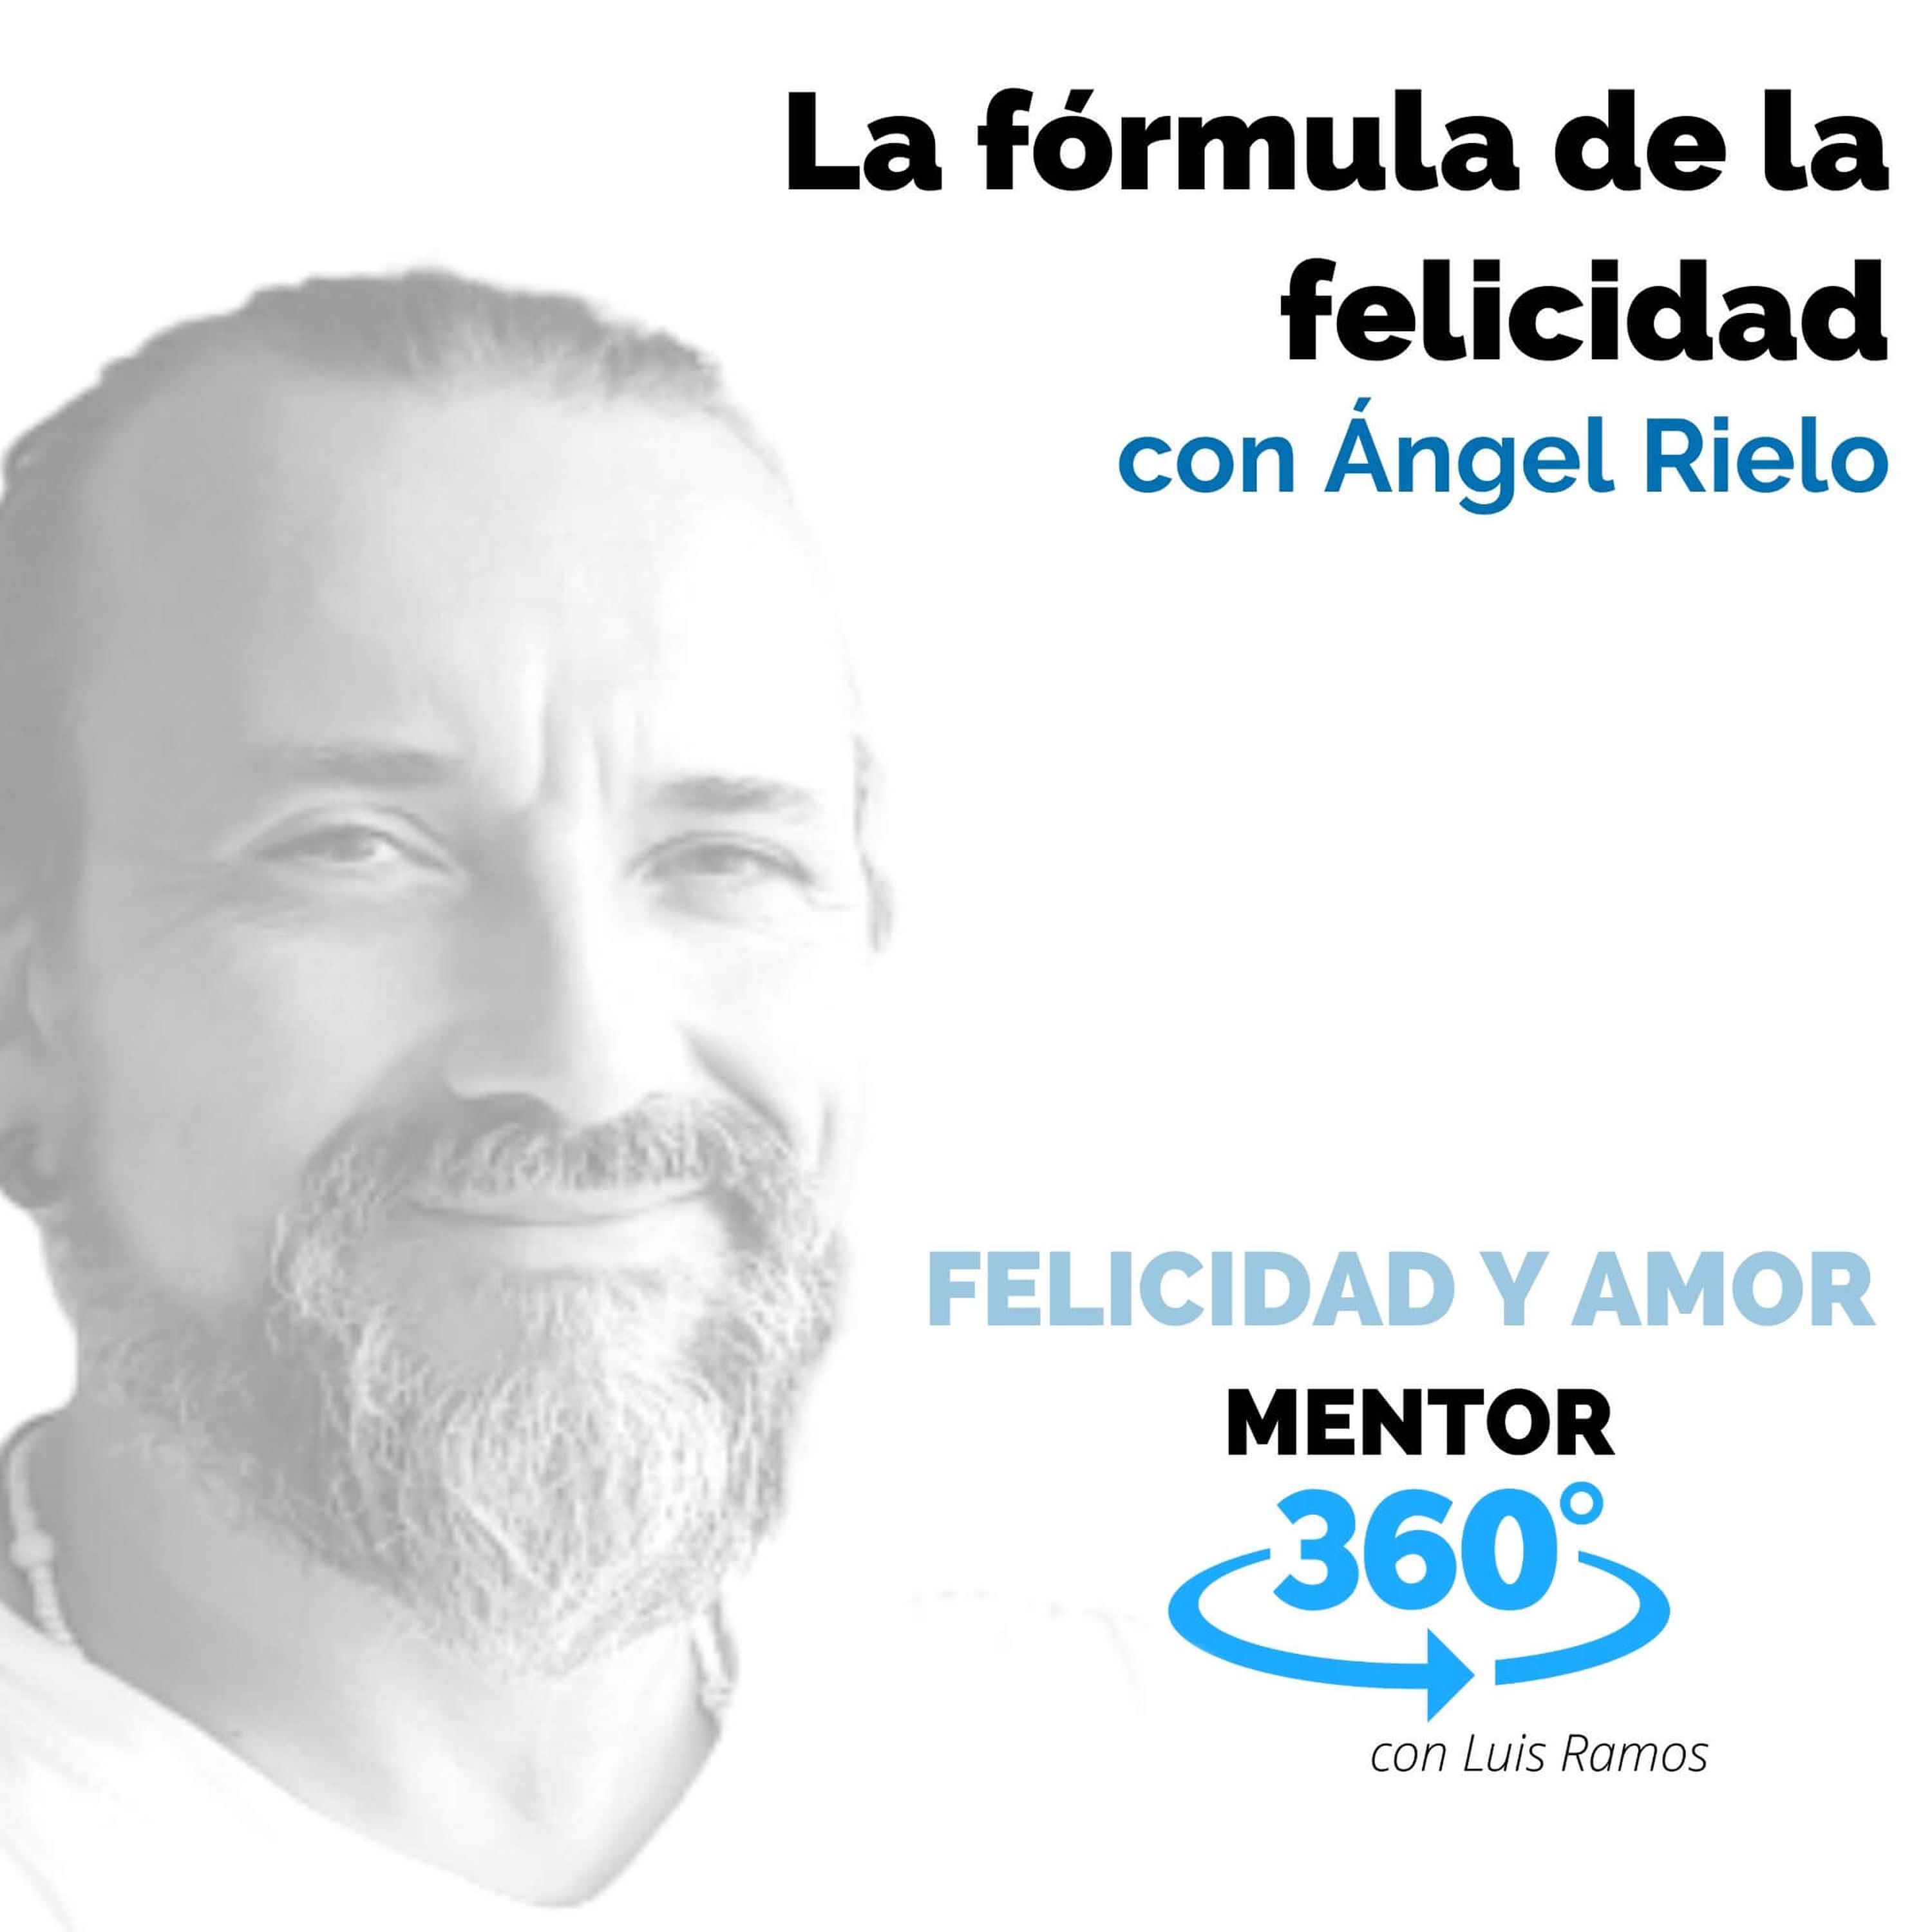 La fórmula de la felicidad, con Ángel Rielo - FELICIDAD Y AMOR - MENTOR360